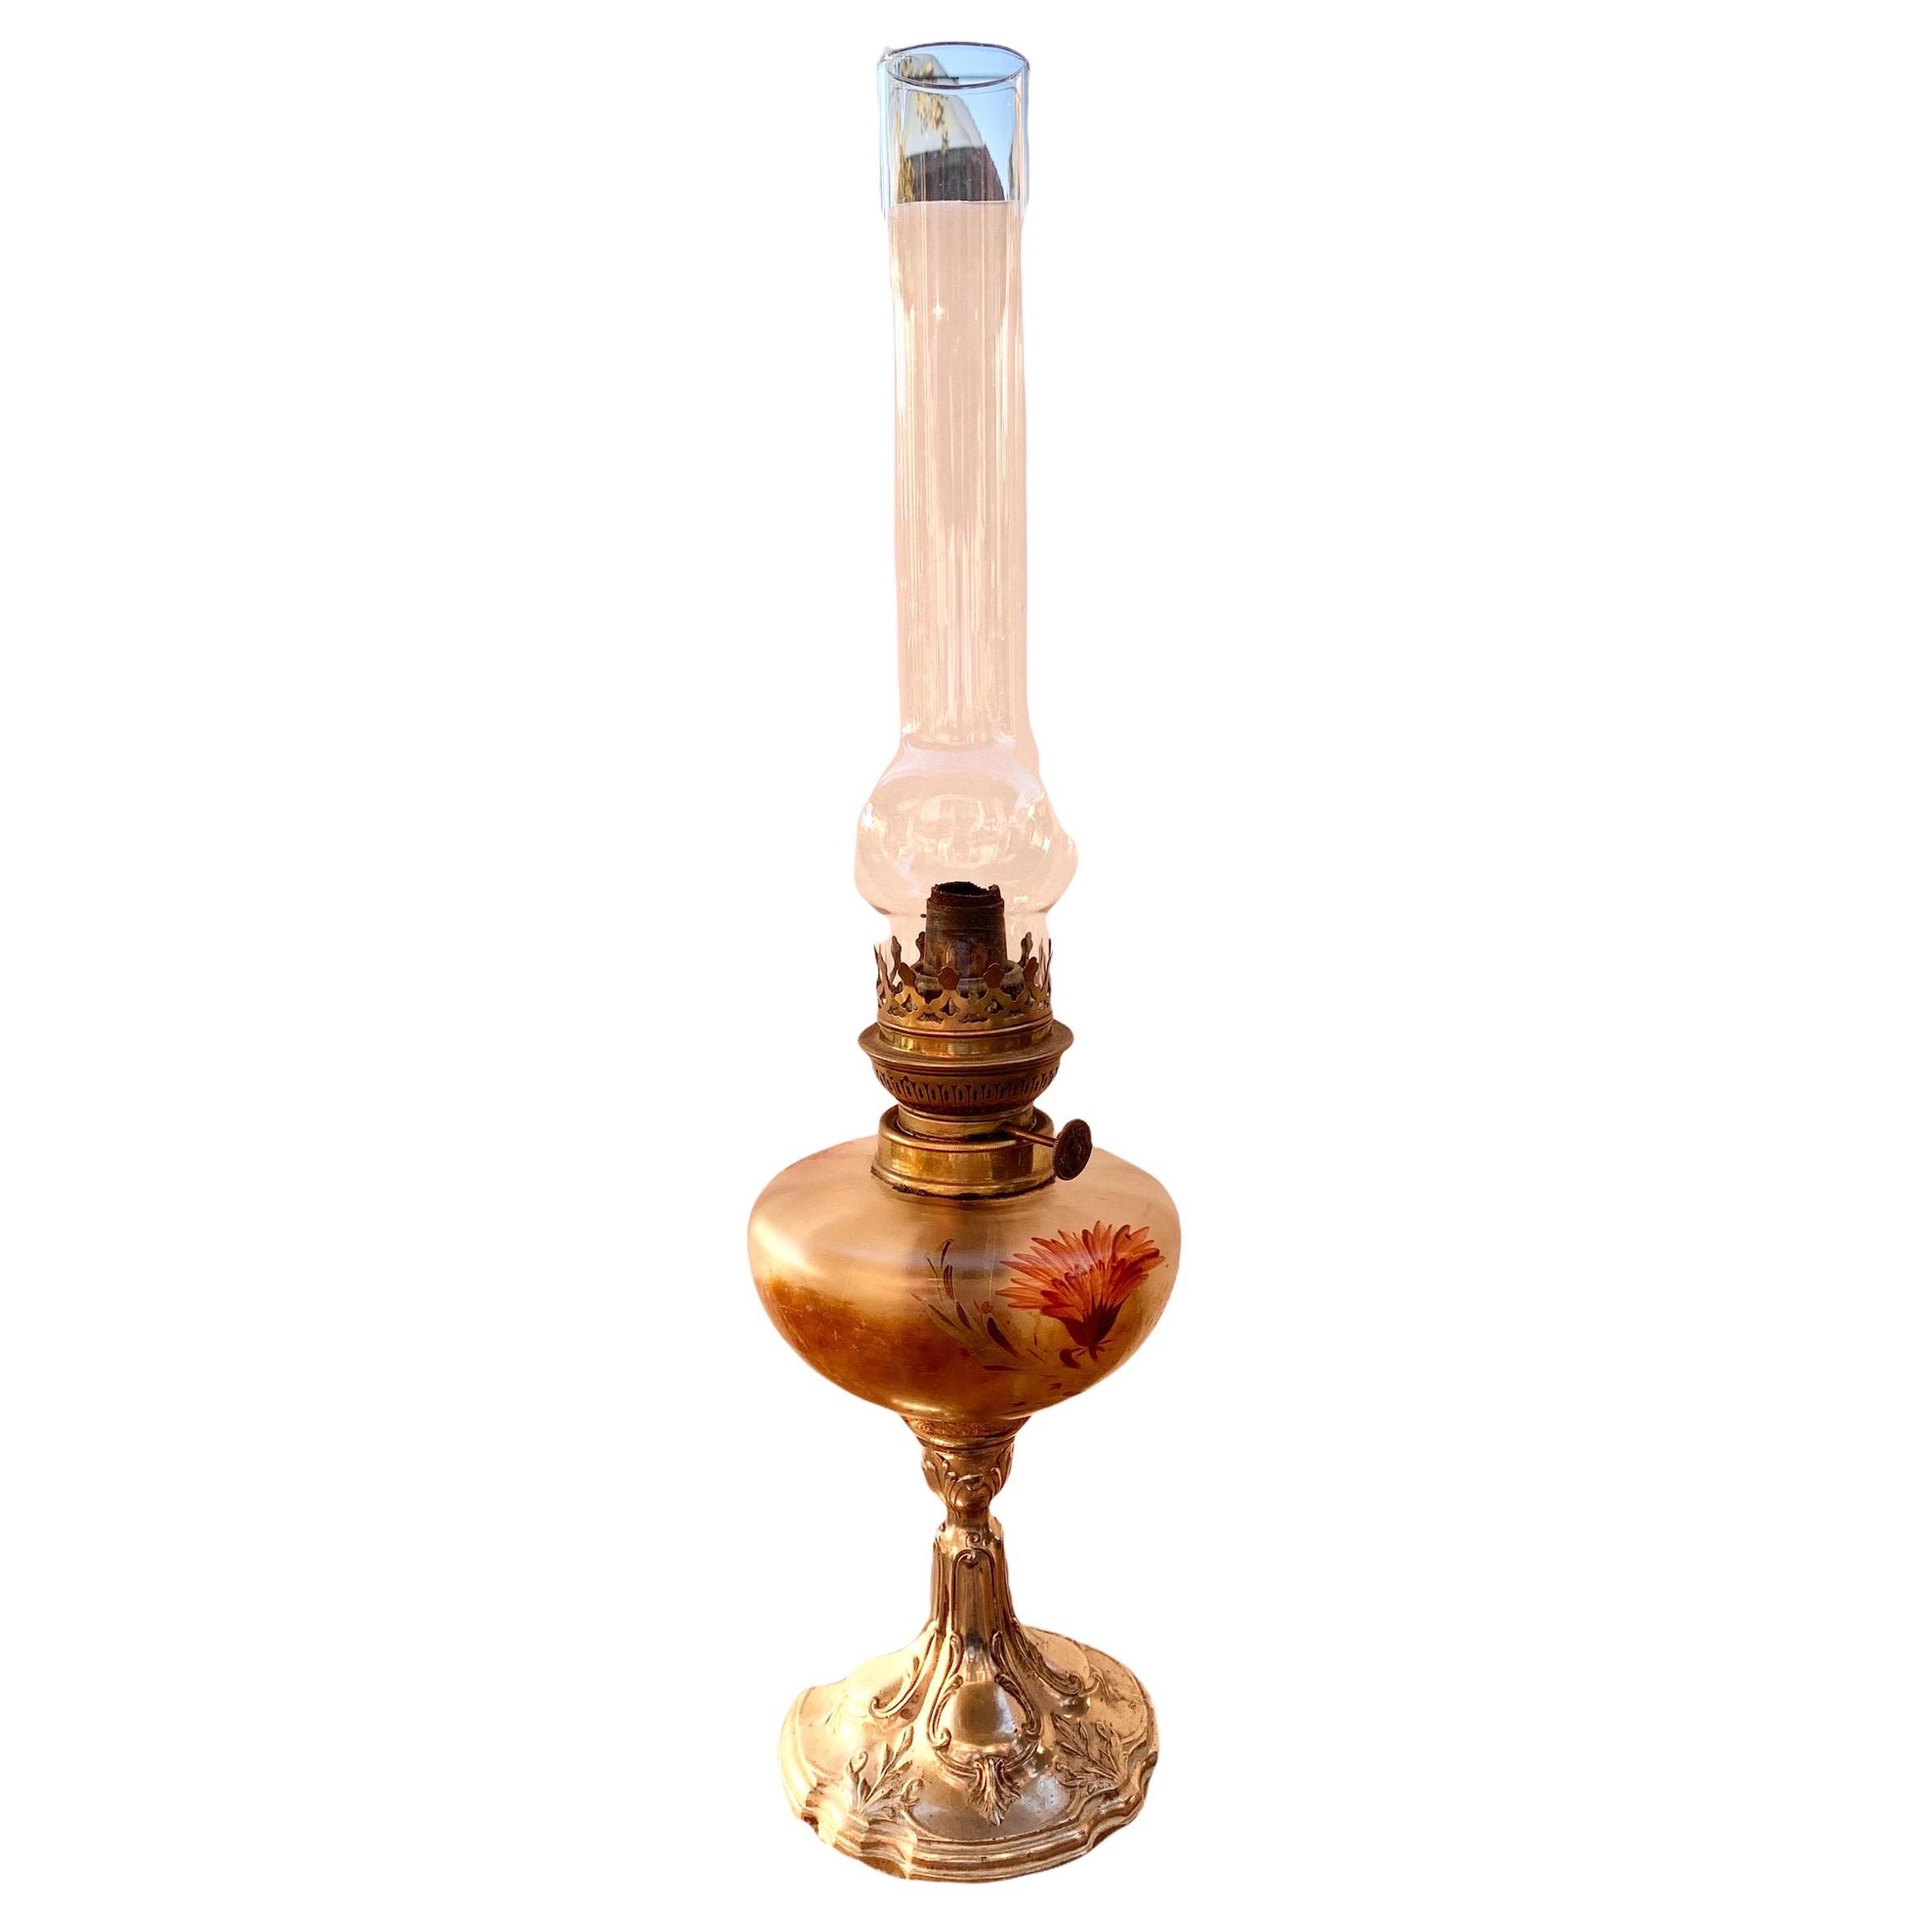 Antique French Art Nouveau Oil Lamp